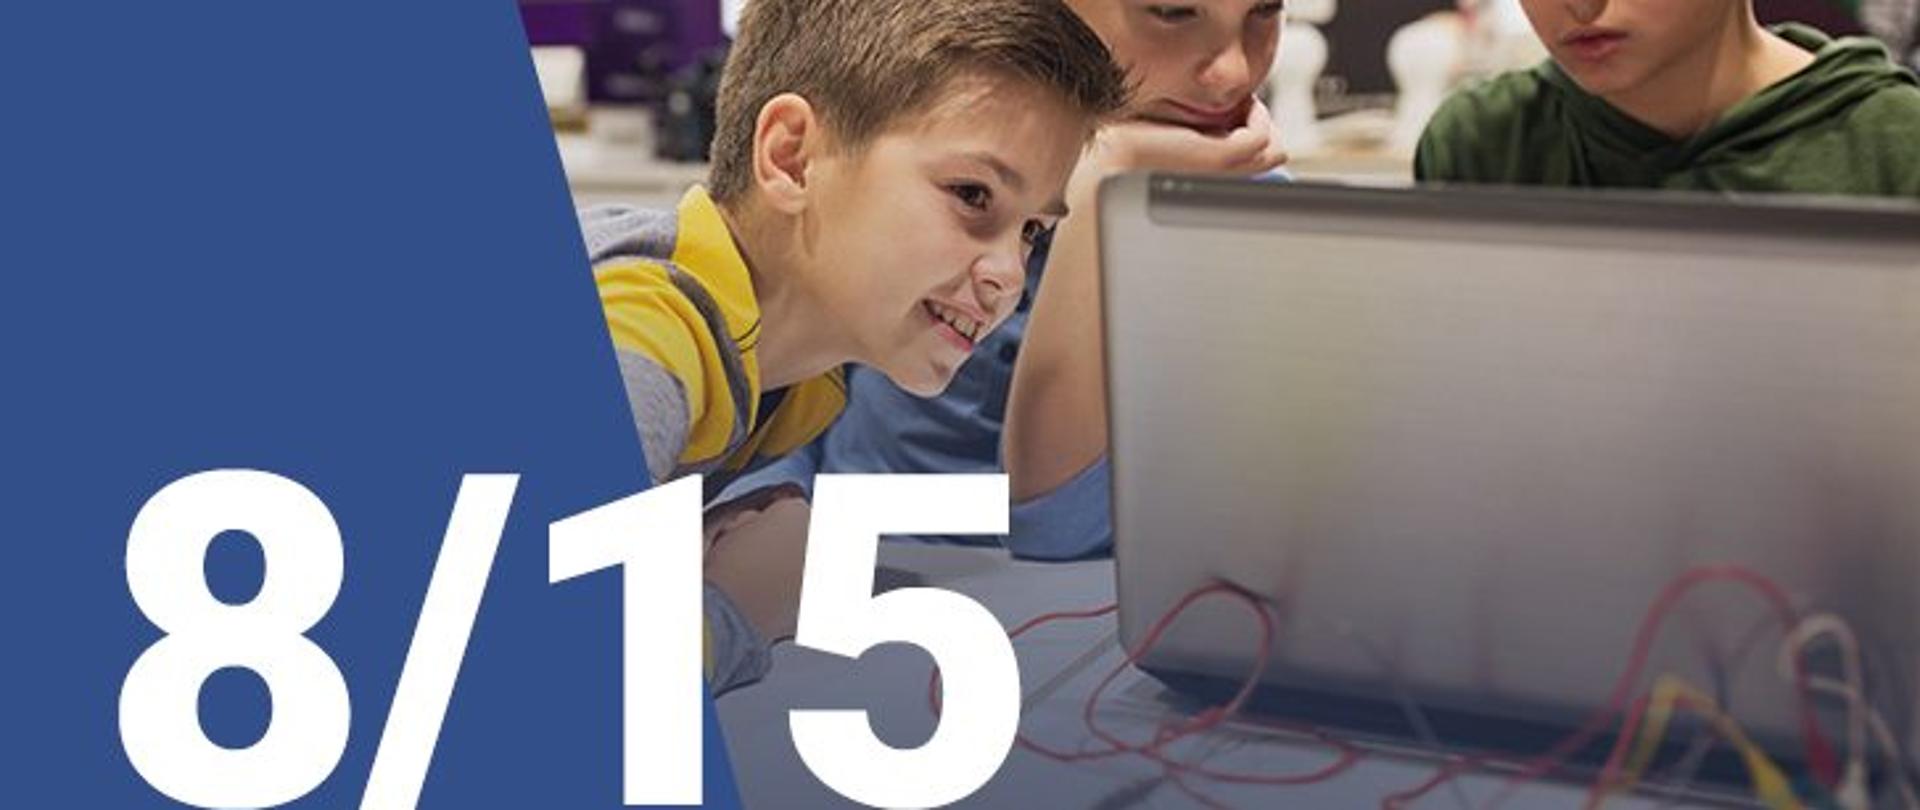 Na zdjęciu widzimy trzech chłopców patrzących na ekran laptopa. W dolnym lewym rogu widoczna jest numeracja zdjęcia (8/15)